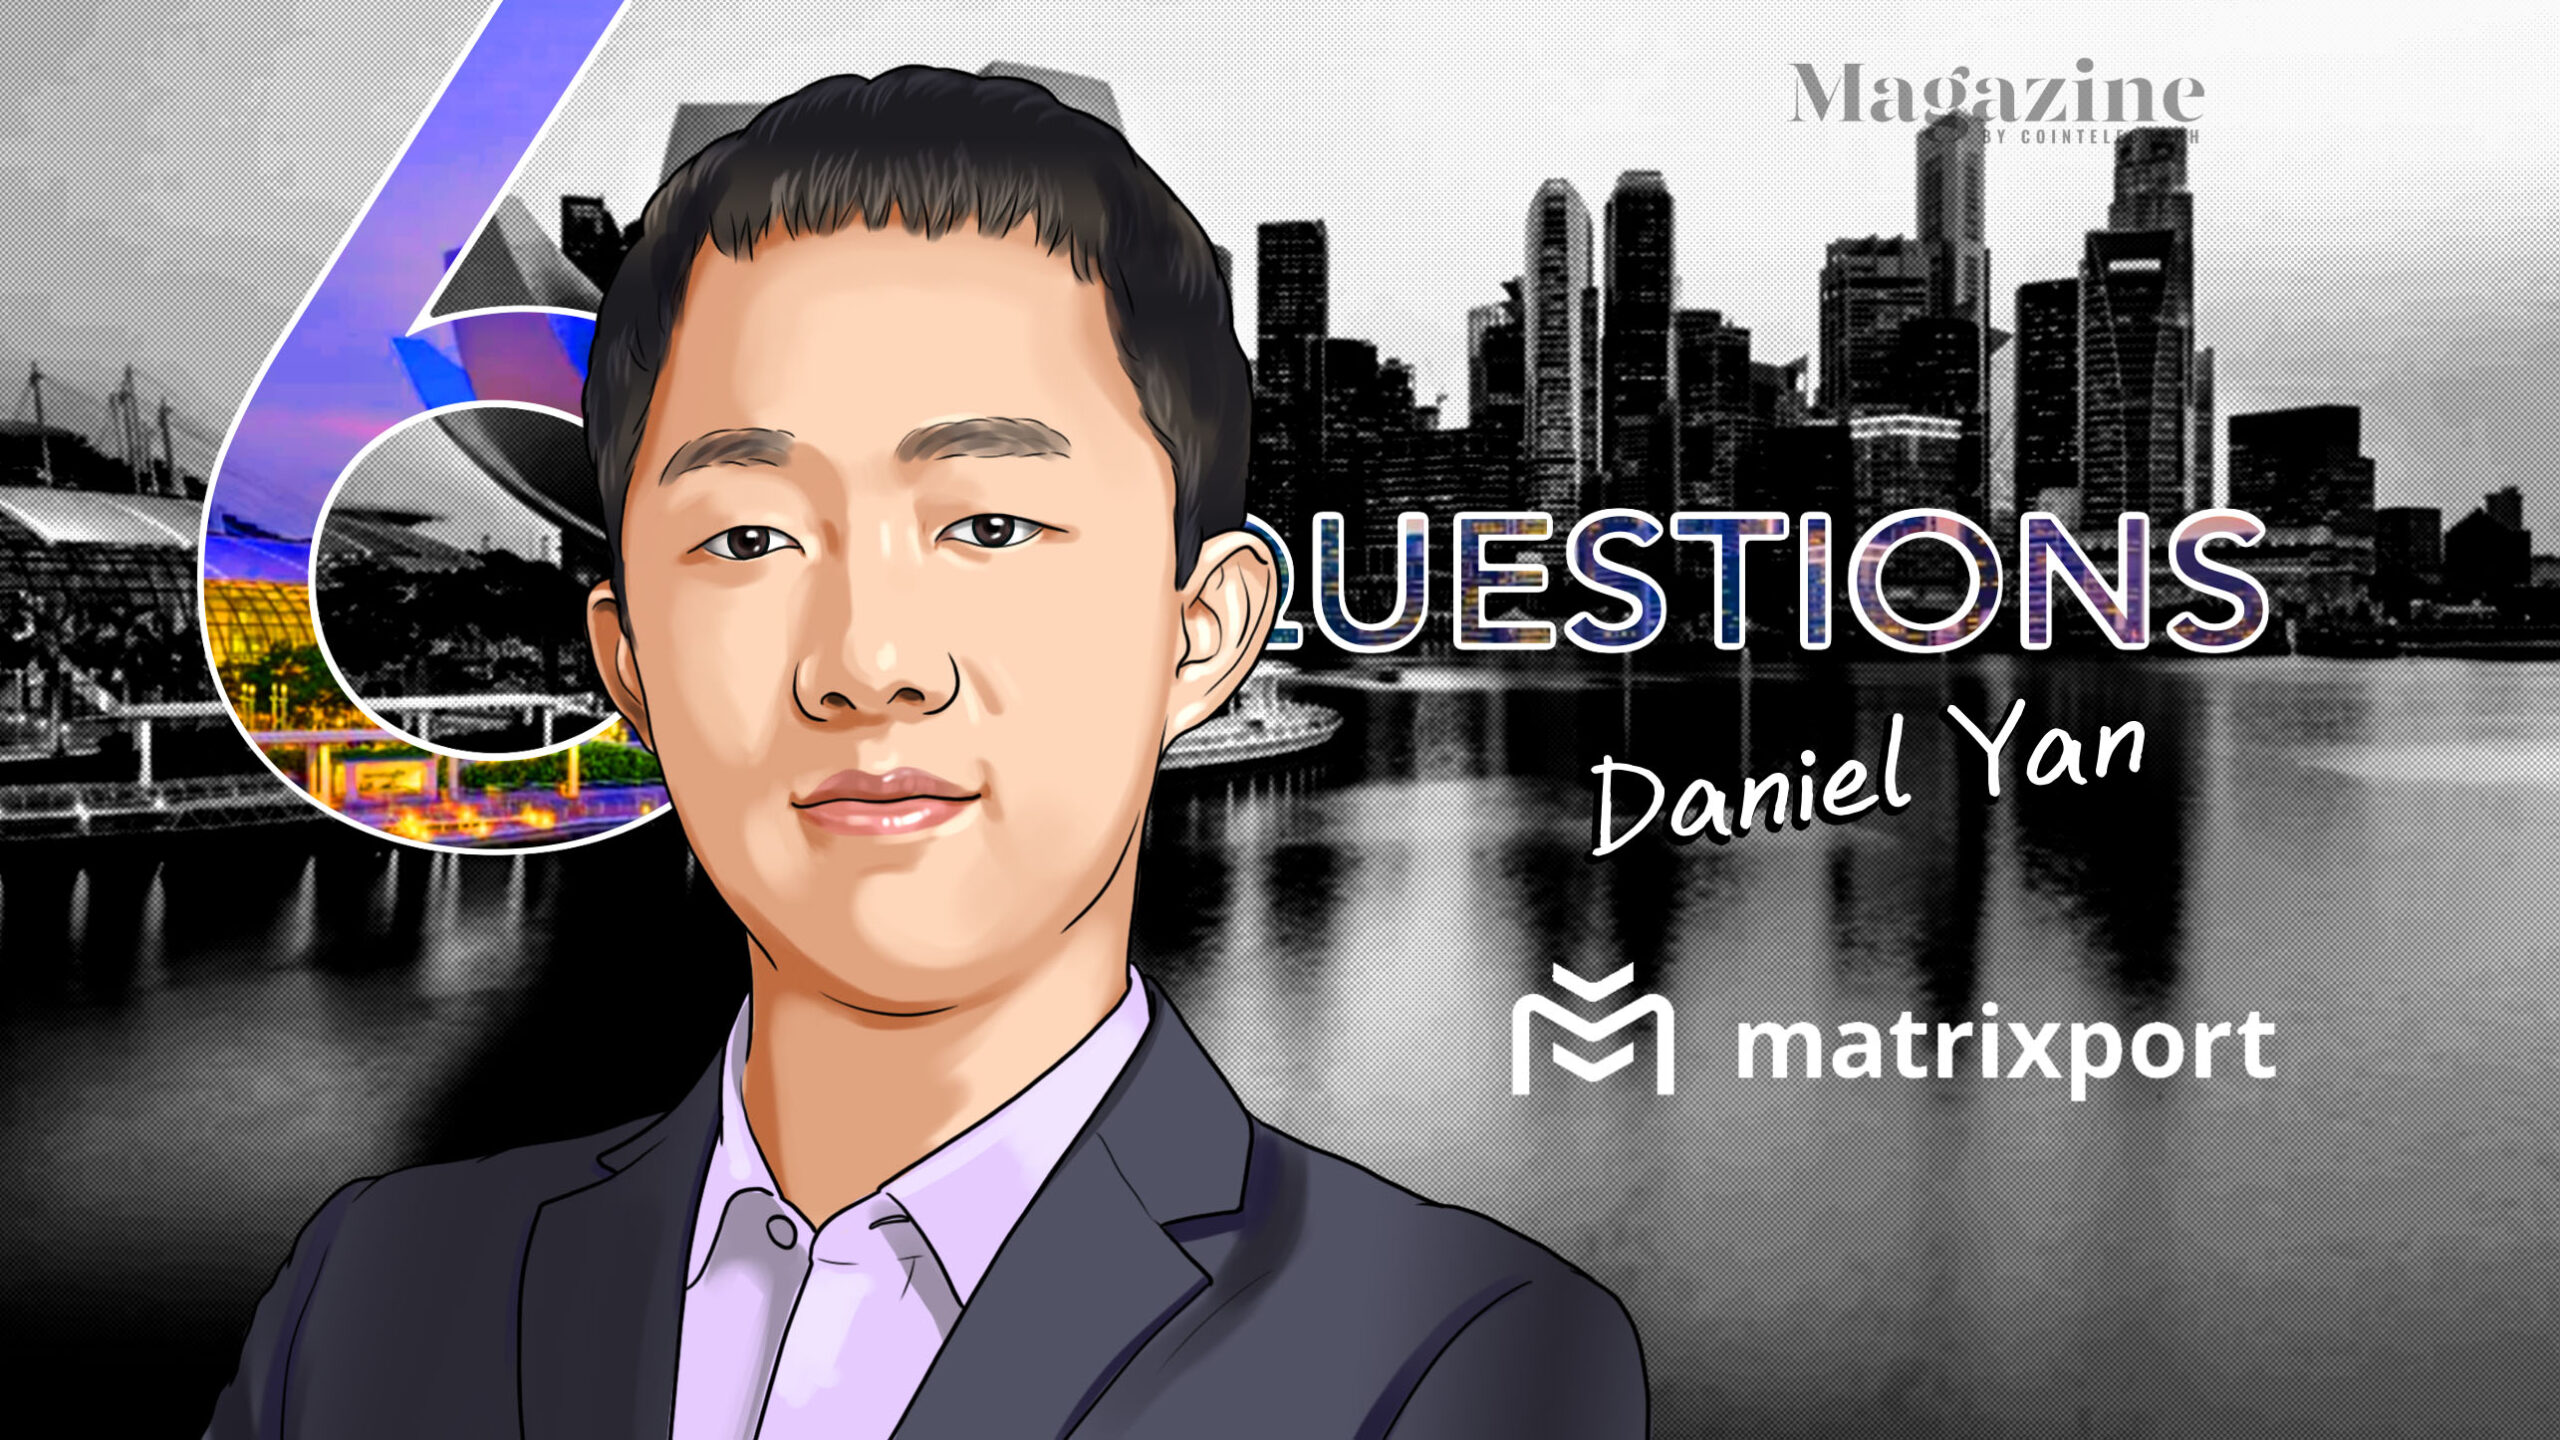 6-questions-for-daniel-yan-of-matrixport